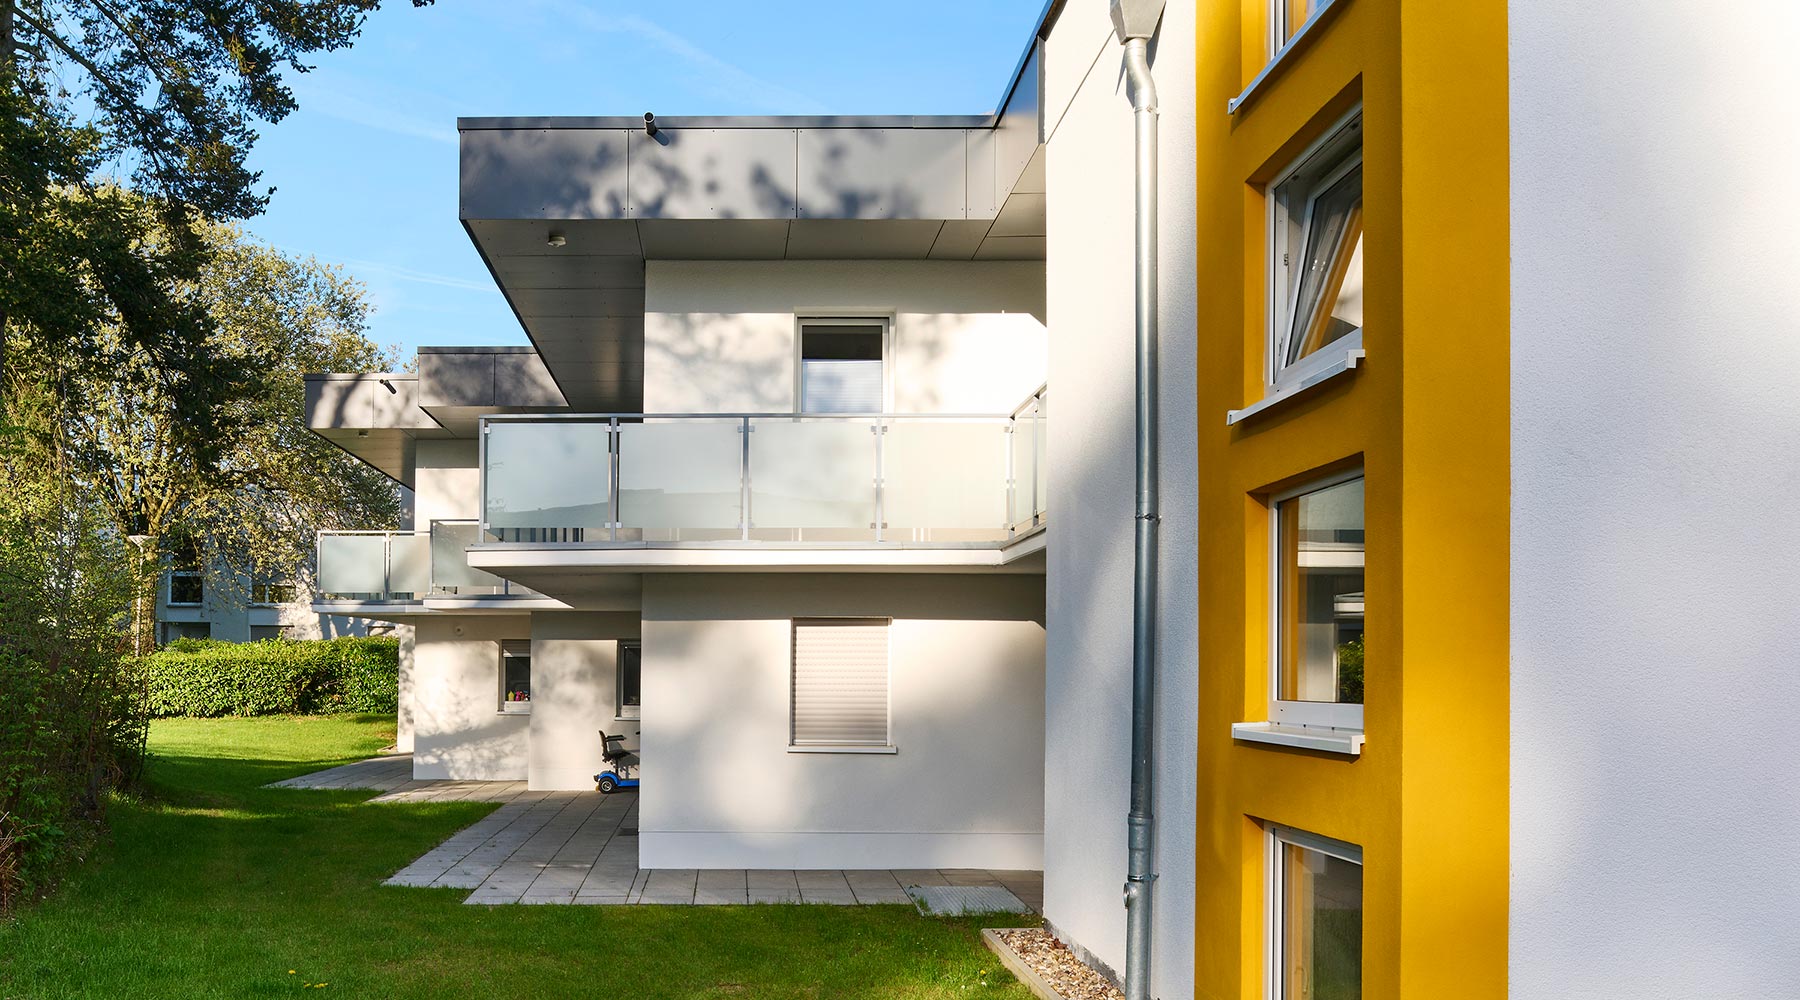 Wohnanlage am Reulert in Aachen. Seitenansicht des Wohnkomplexes, links: Flachdachhäuser weiß, mit gelbem Farbakzent.